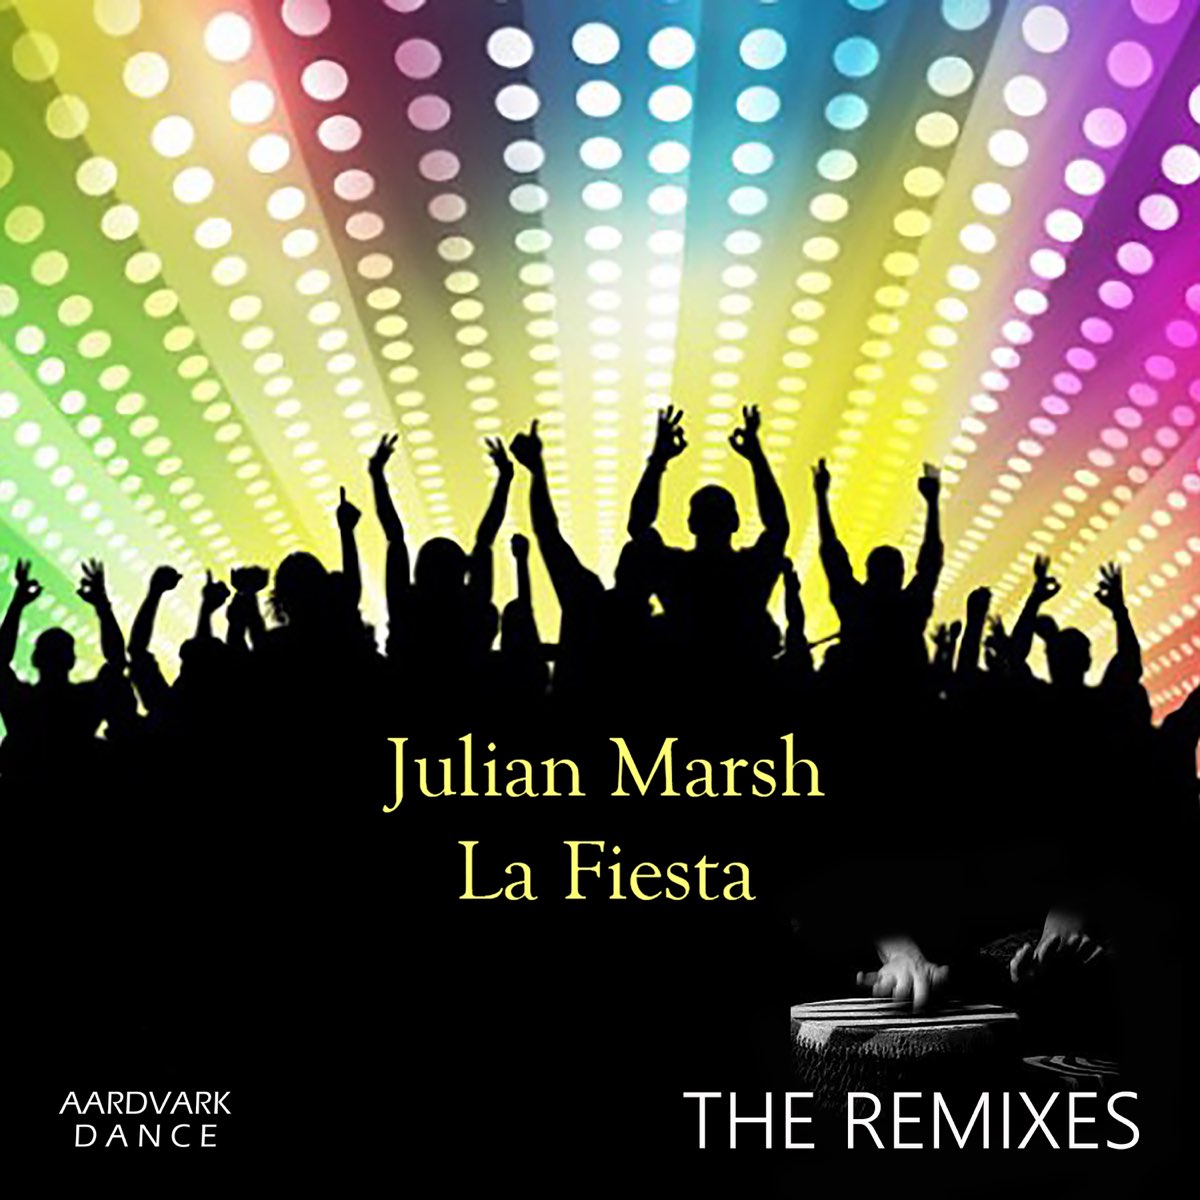 La Fiesta (The Remixes) - EP by Julian Marsh on Apple Music